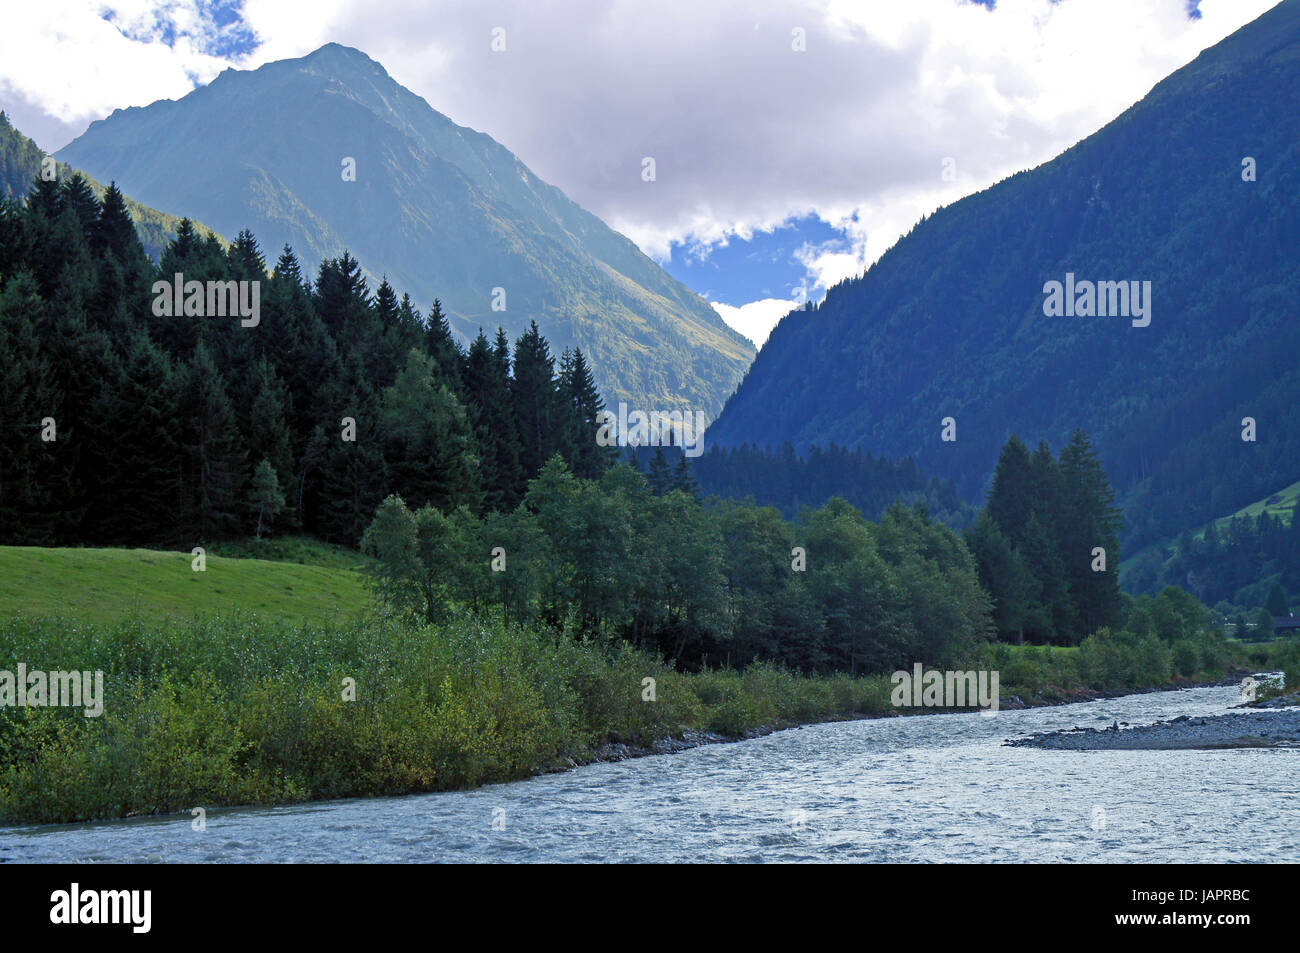 Ein Tal mit einem breiten Bach, Wiesen und bewaldete Berge in Tirol A valley with a wide creek, meadows and forested mountains in Tyrol Stock Photo